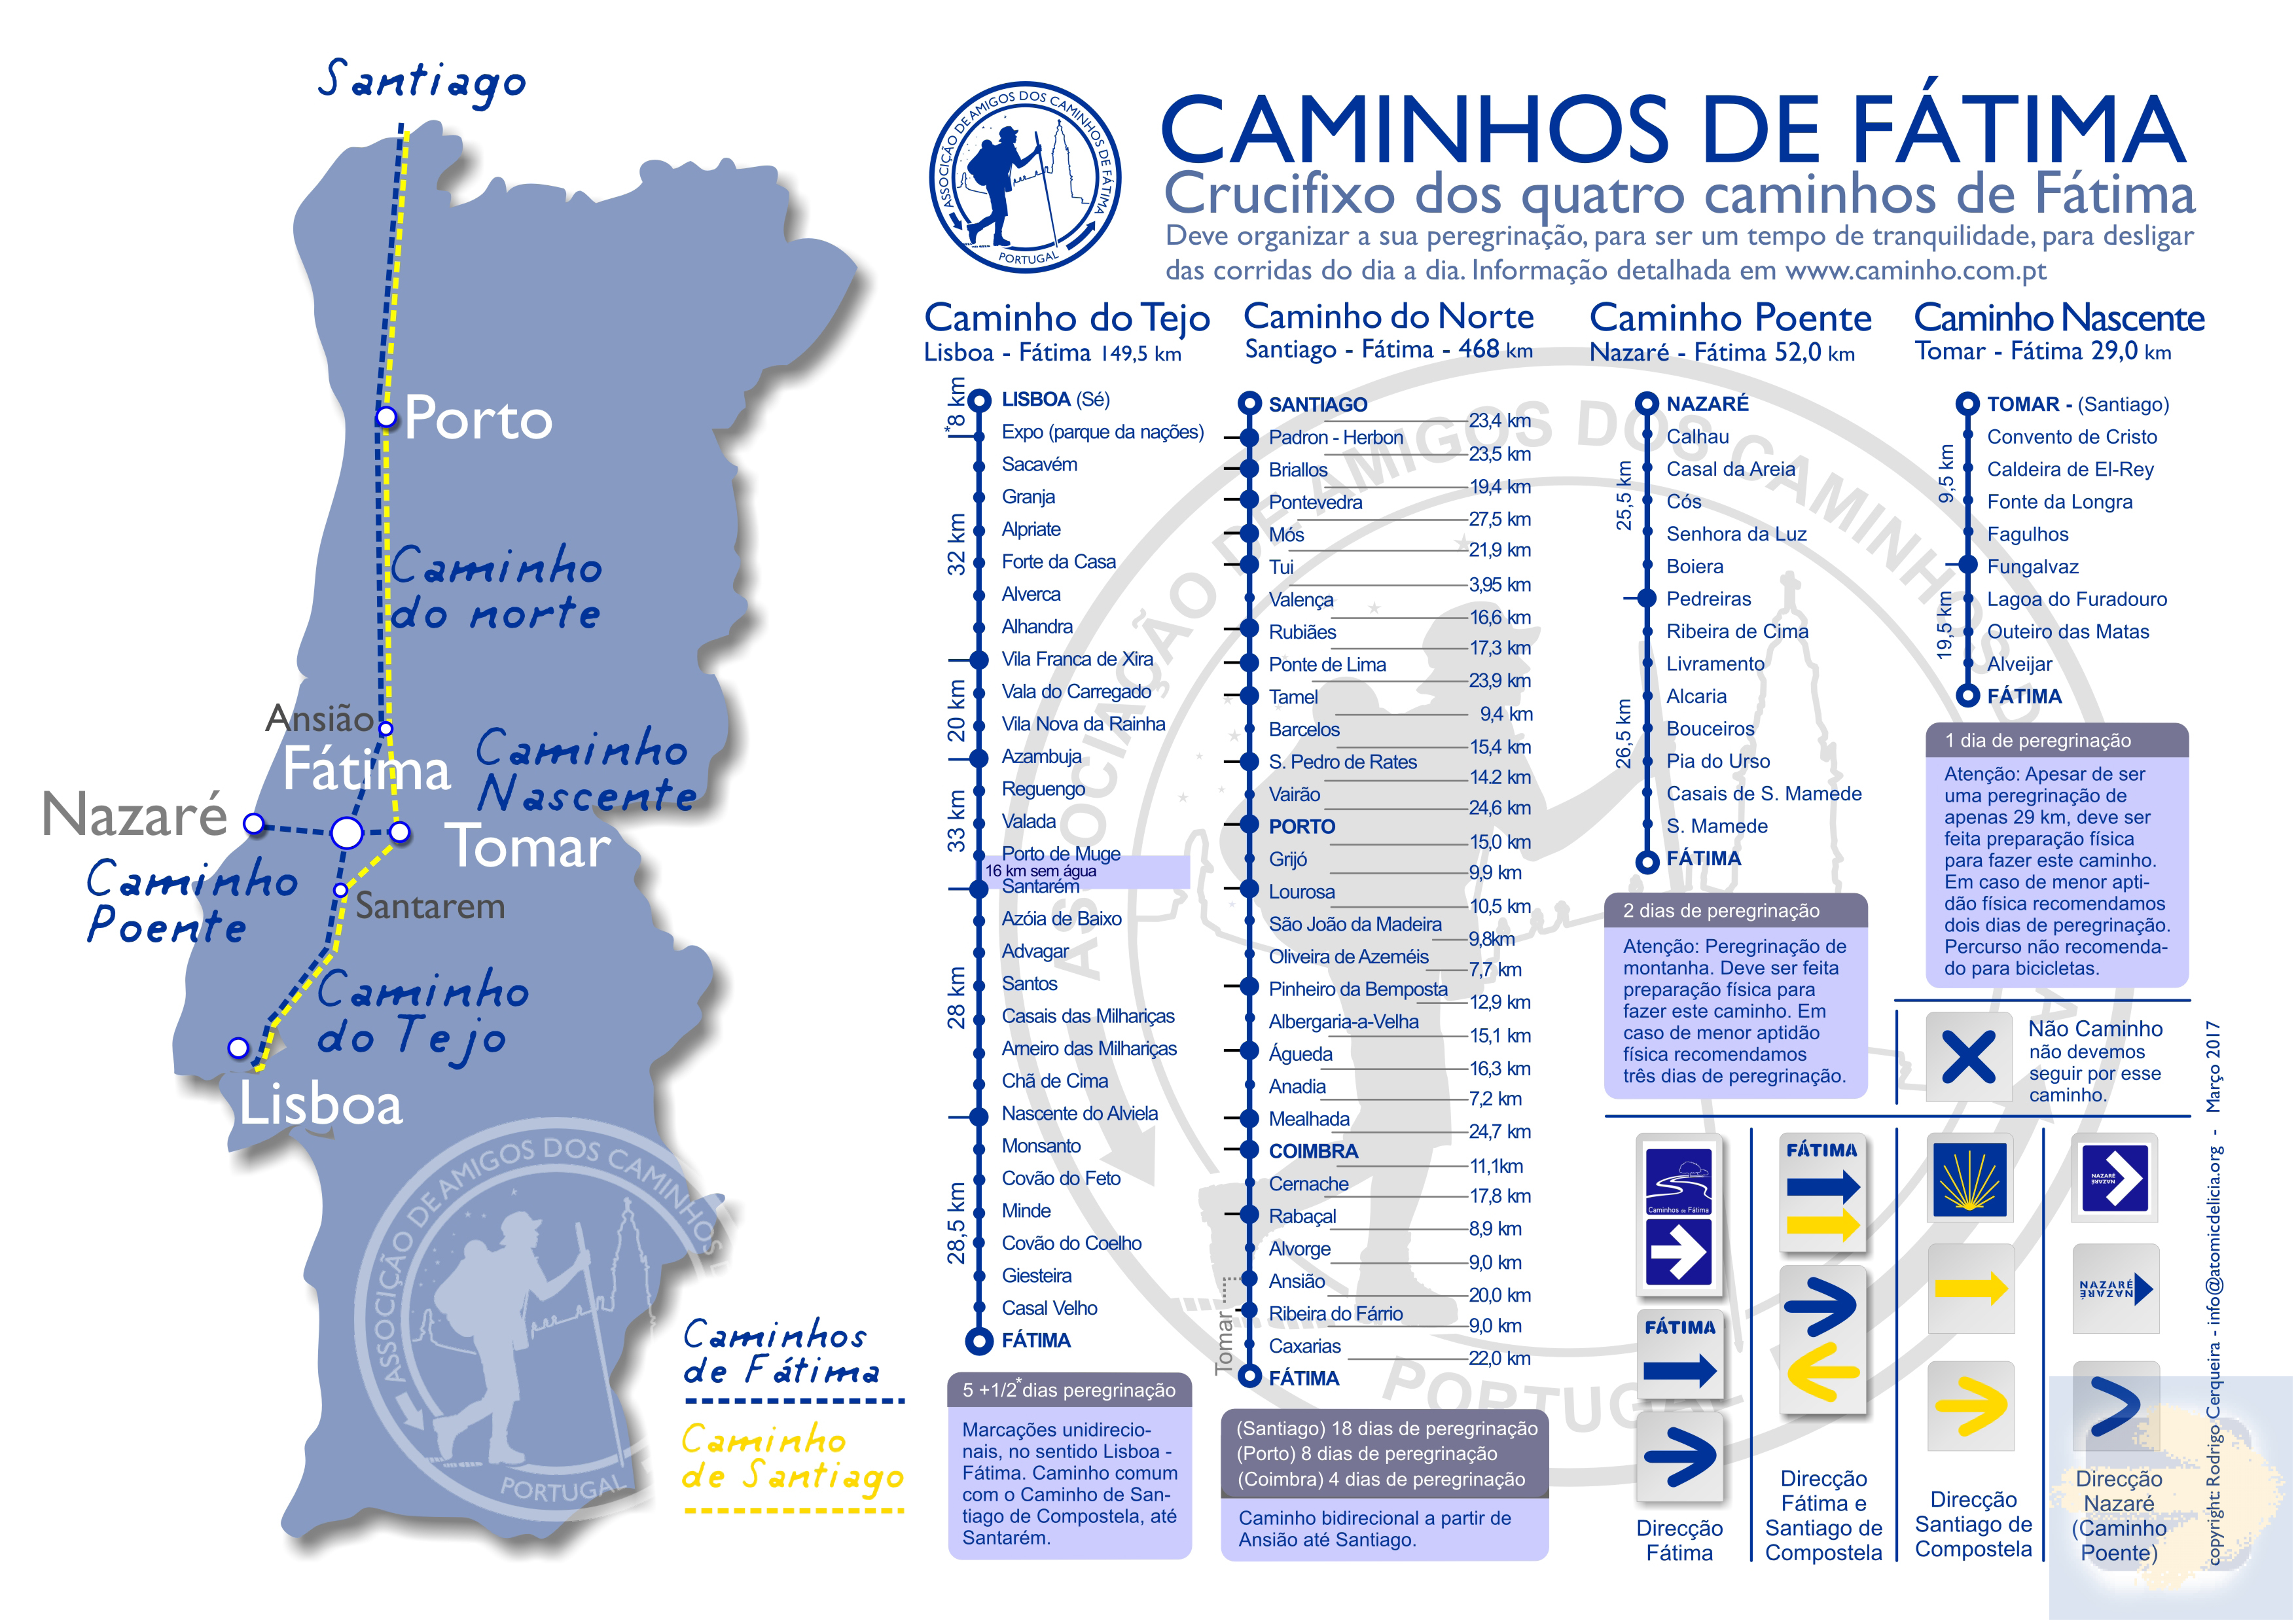 Caminhos de Fátima and Santiago